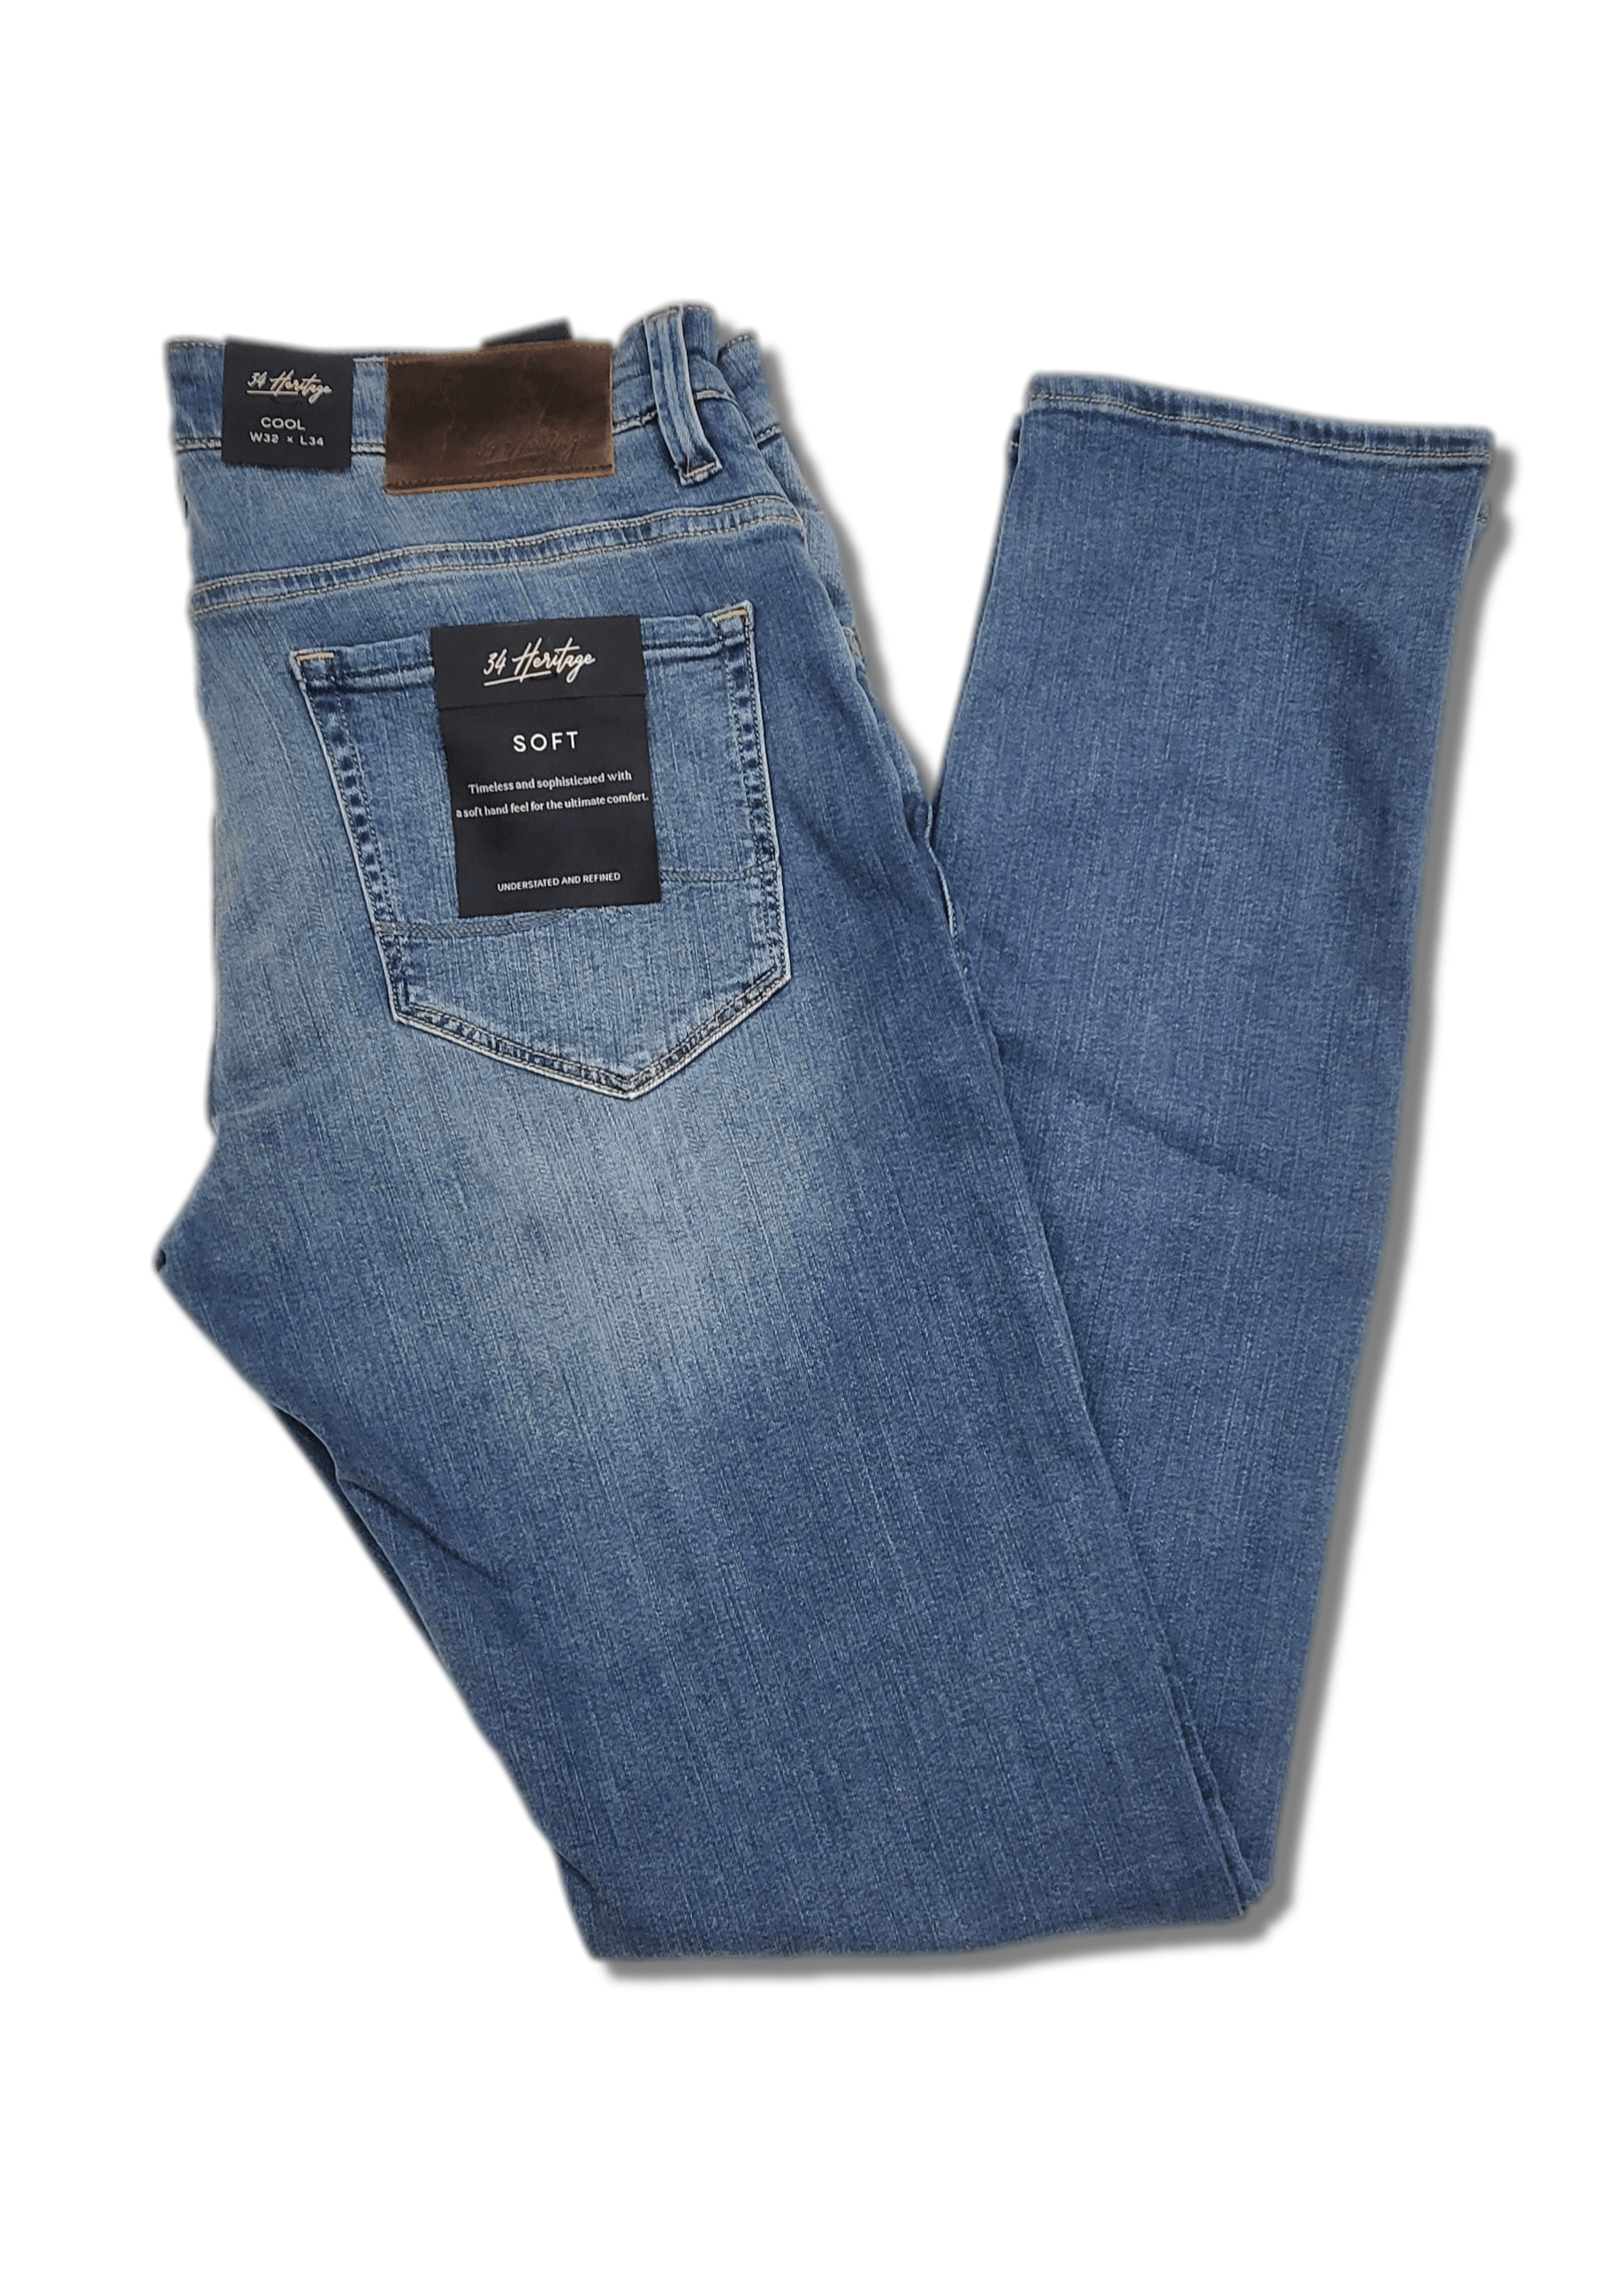 Laflamme- Jeans ajusté extensible - 34 Heritage